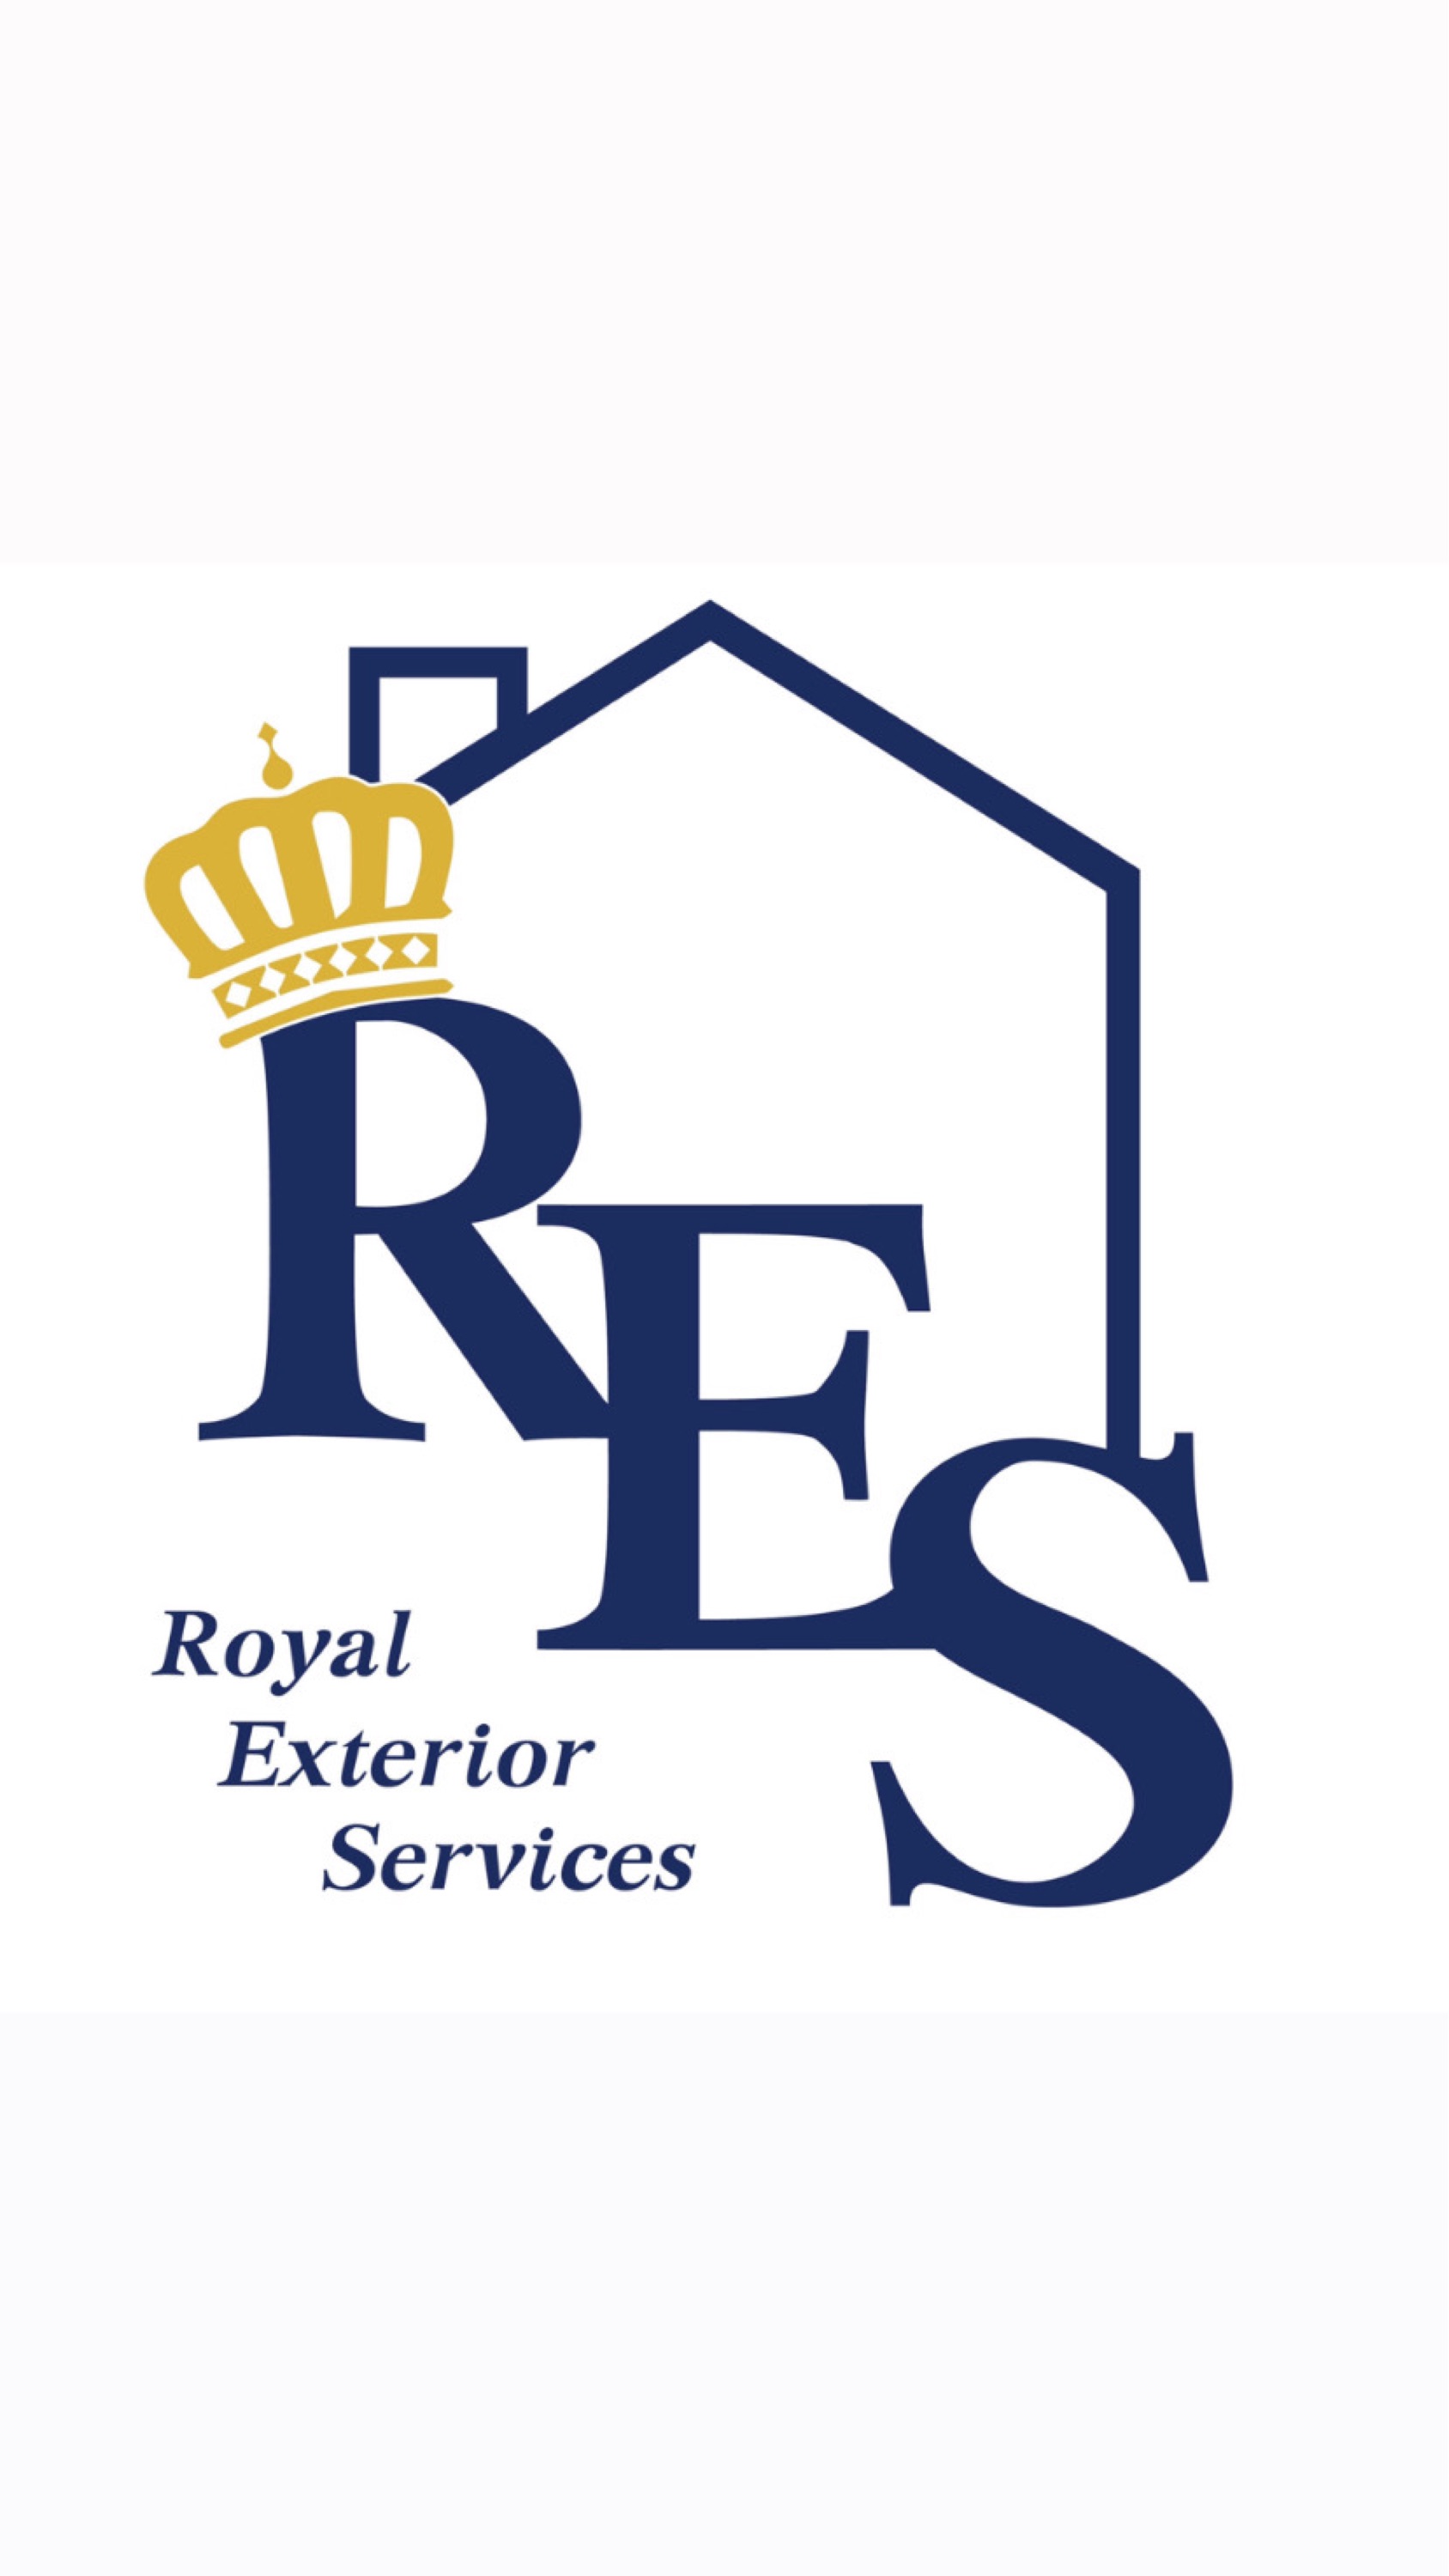 Royal Exterior Services Logo